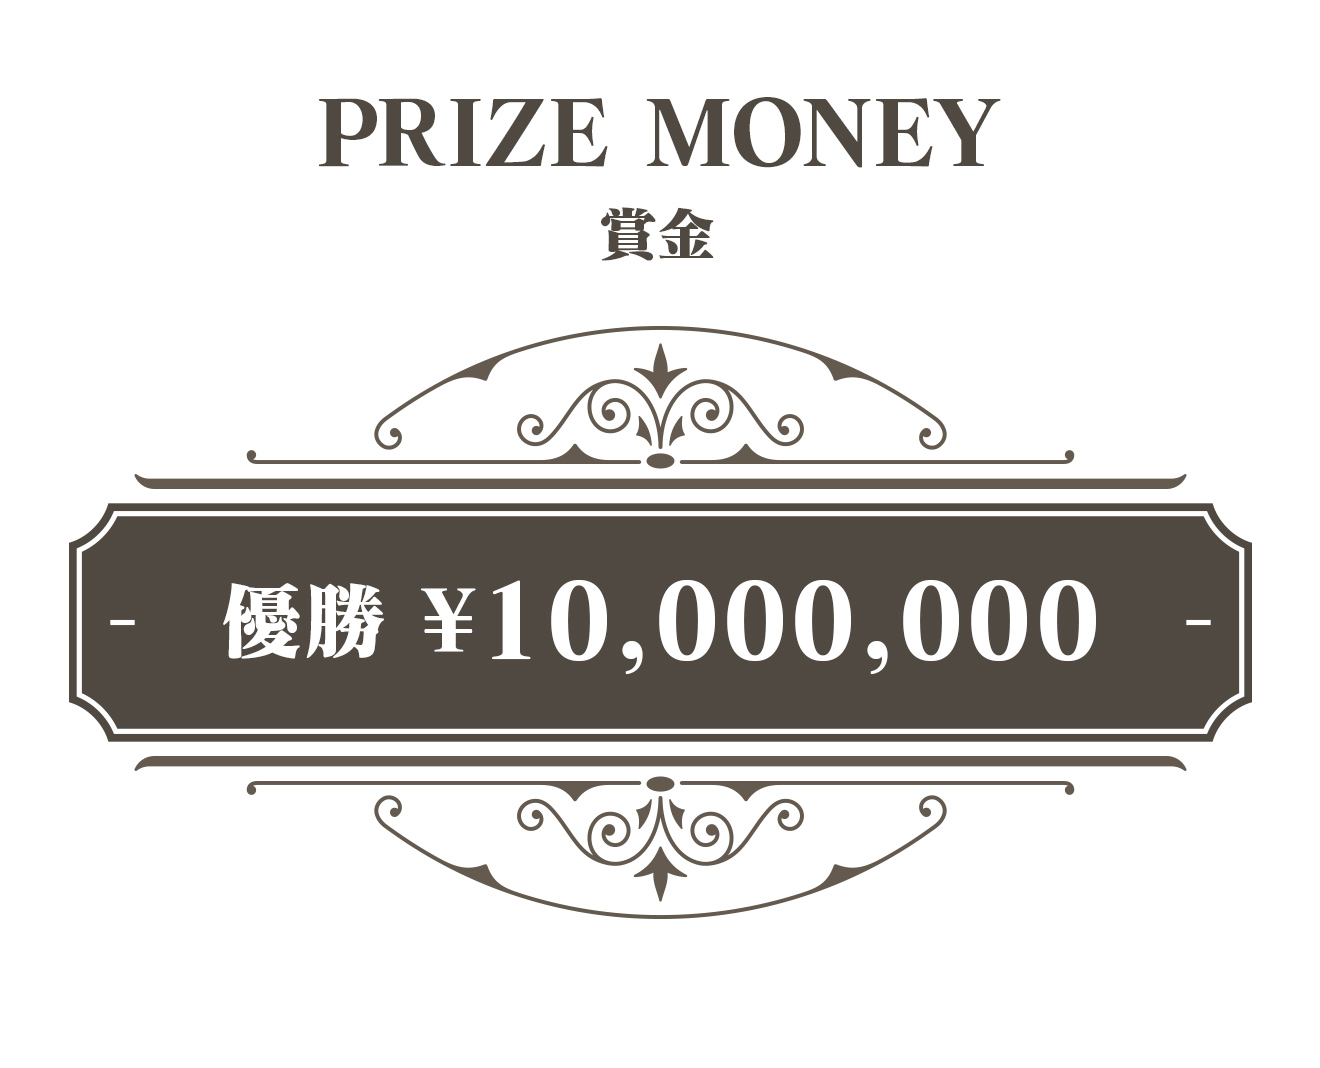 賞金:1位 20,000,000円、2位 5,000,000円、3位 3,000,000円、4位 1,000,000円